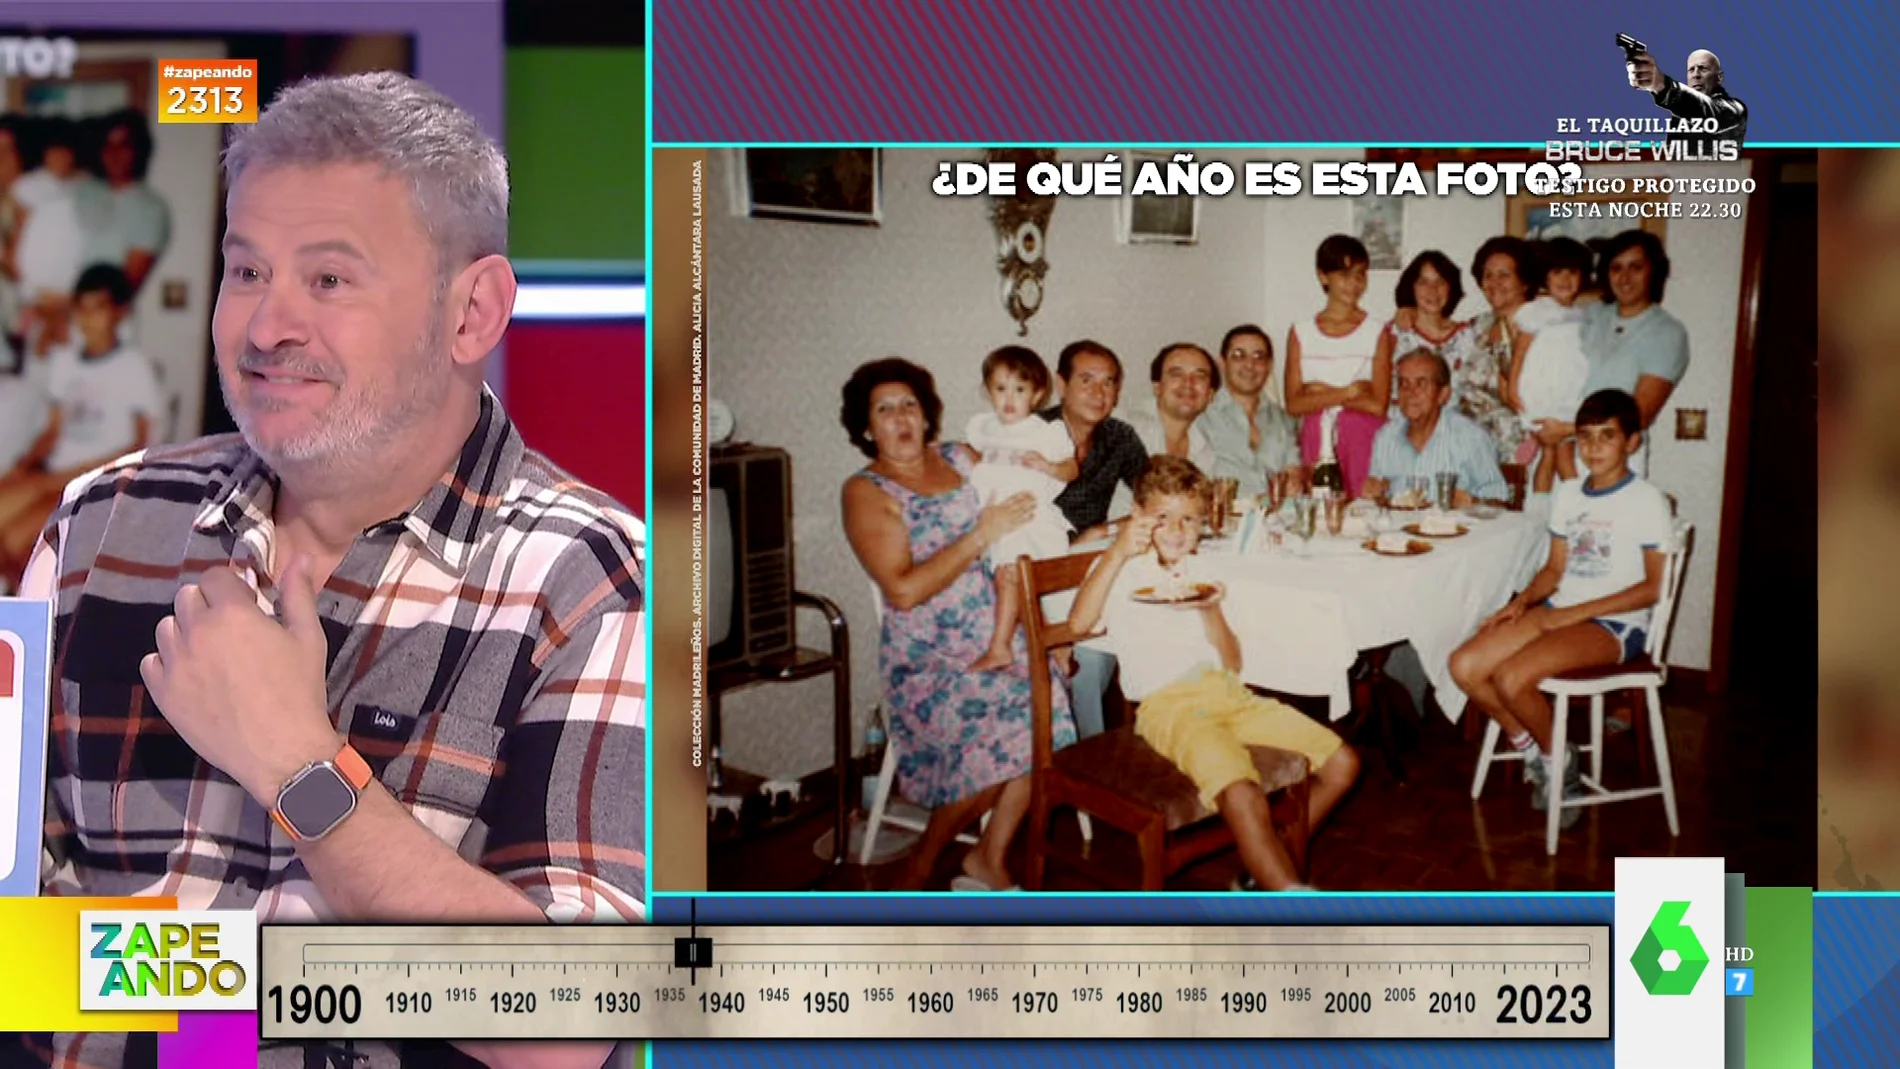 Miki Nadal 'clava' el año de la foto de una familia que celebra un cumpleaños: "Yo tengo la edad de ese chaval"